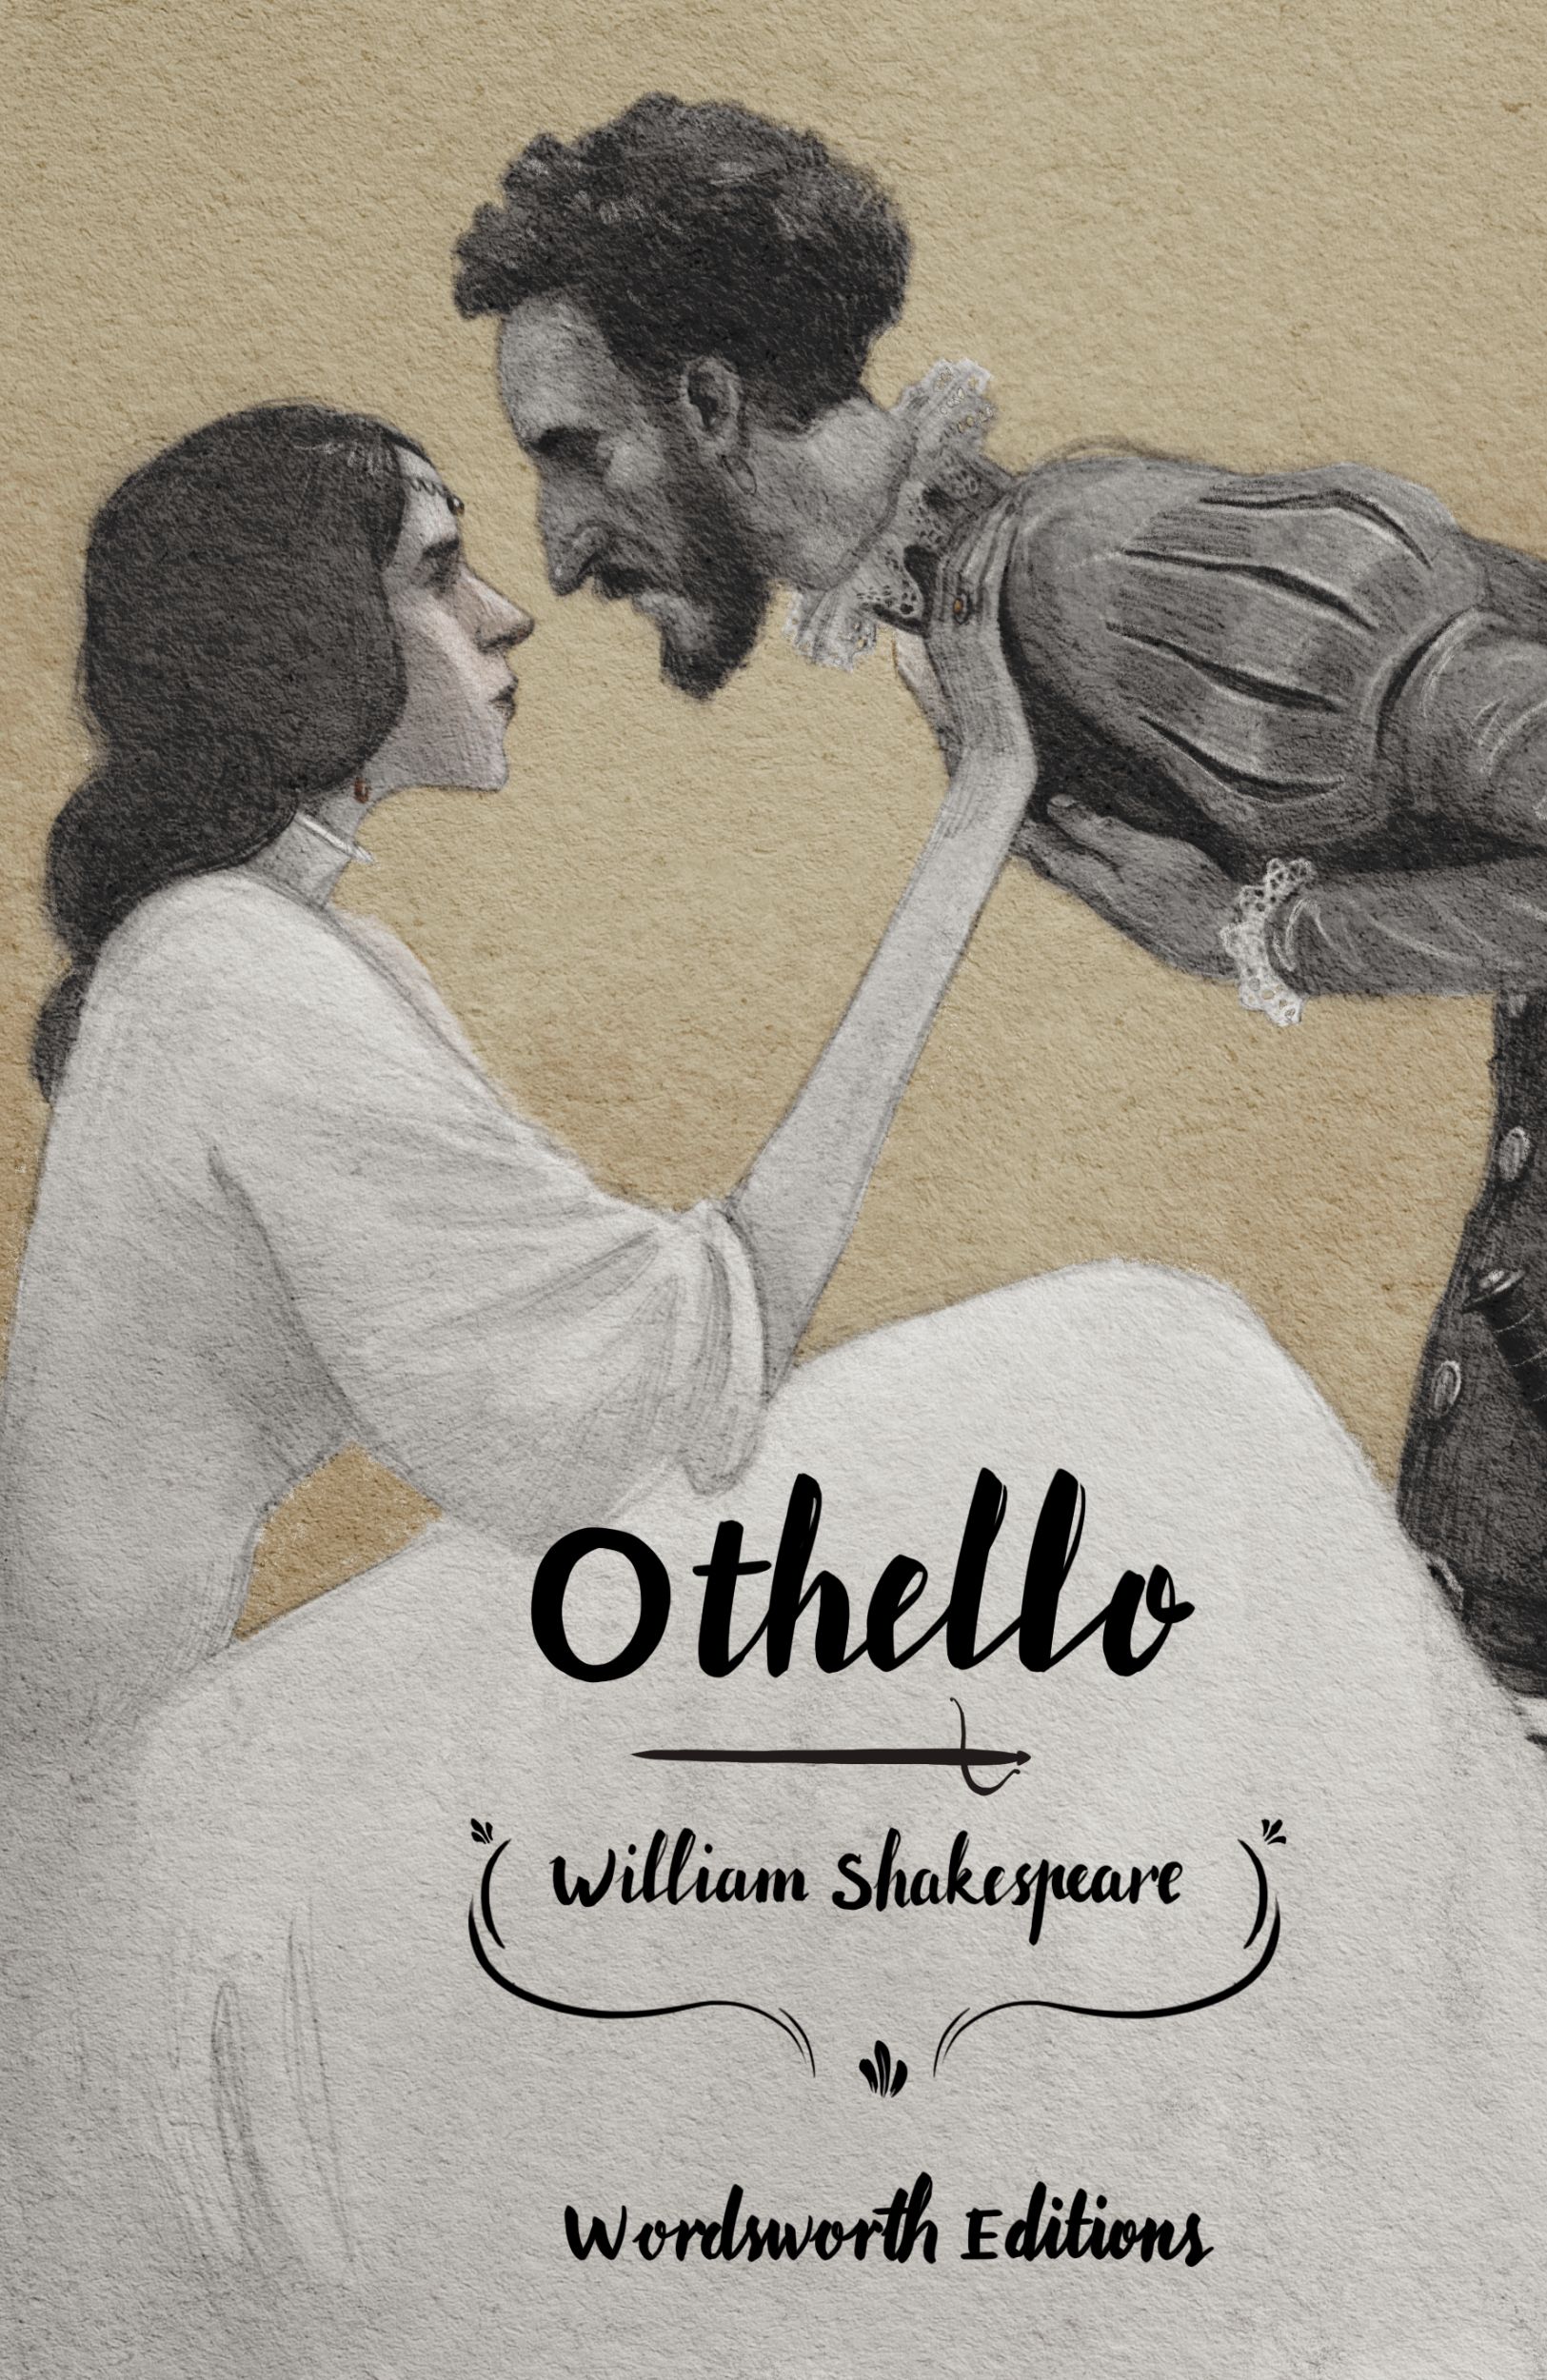 Othello (Collector’s Edition)